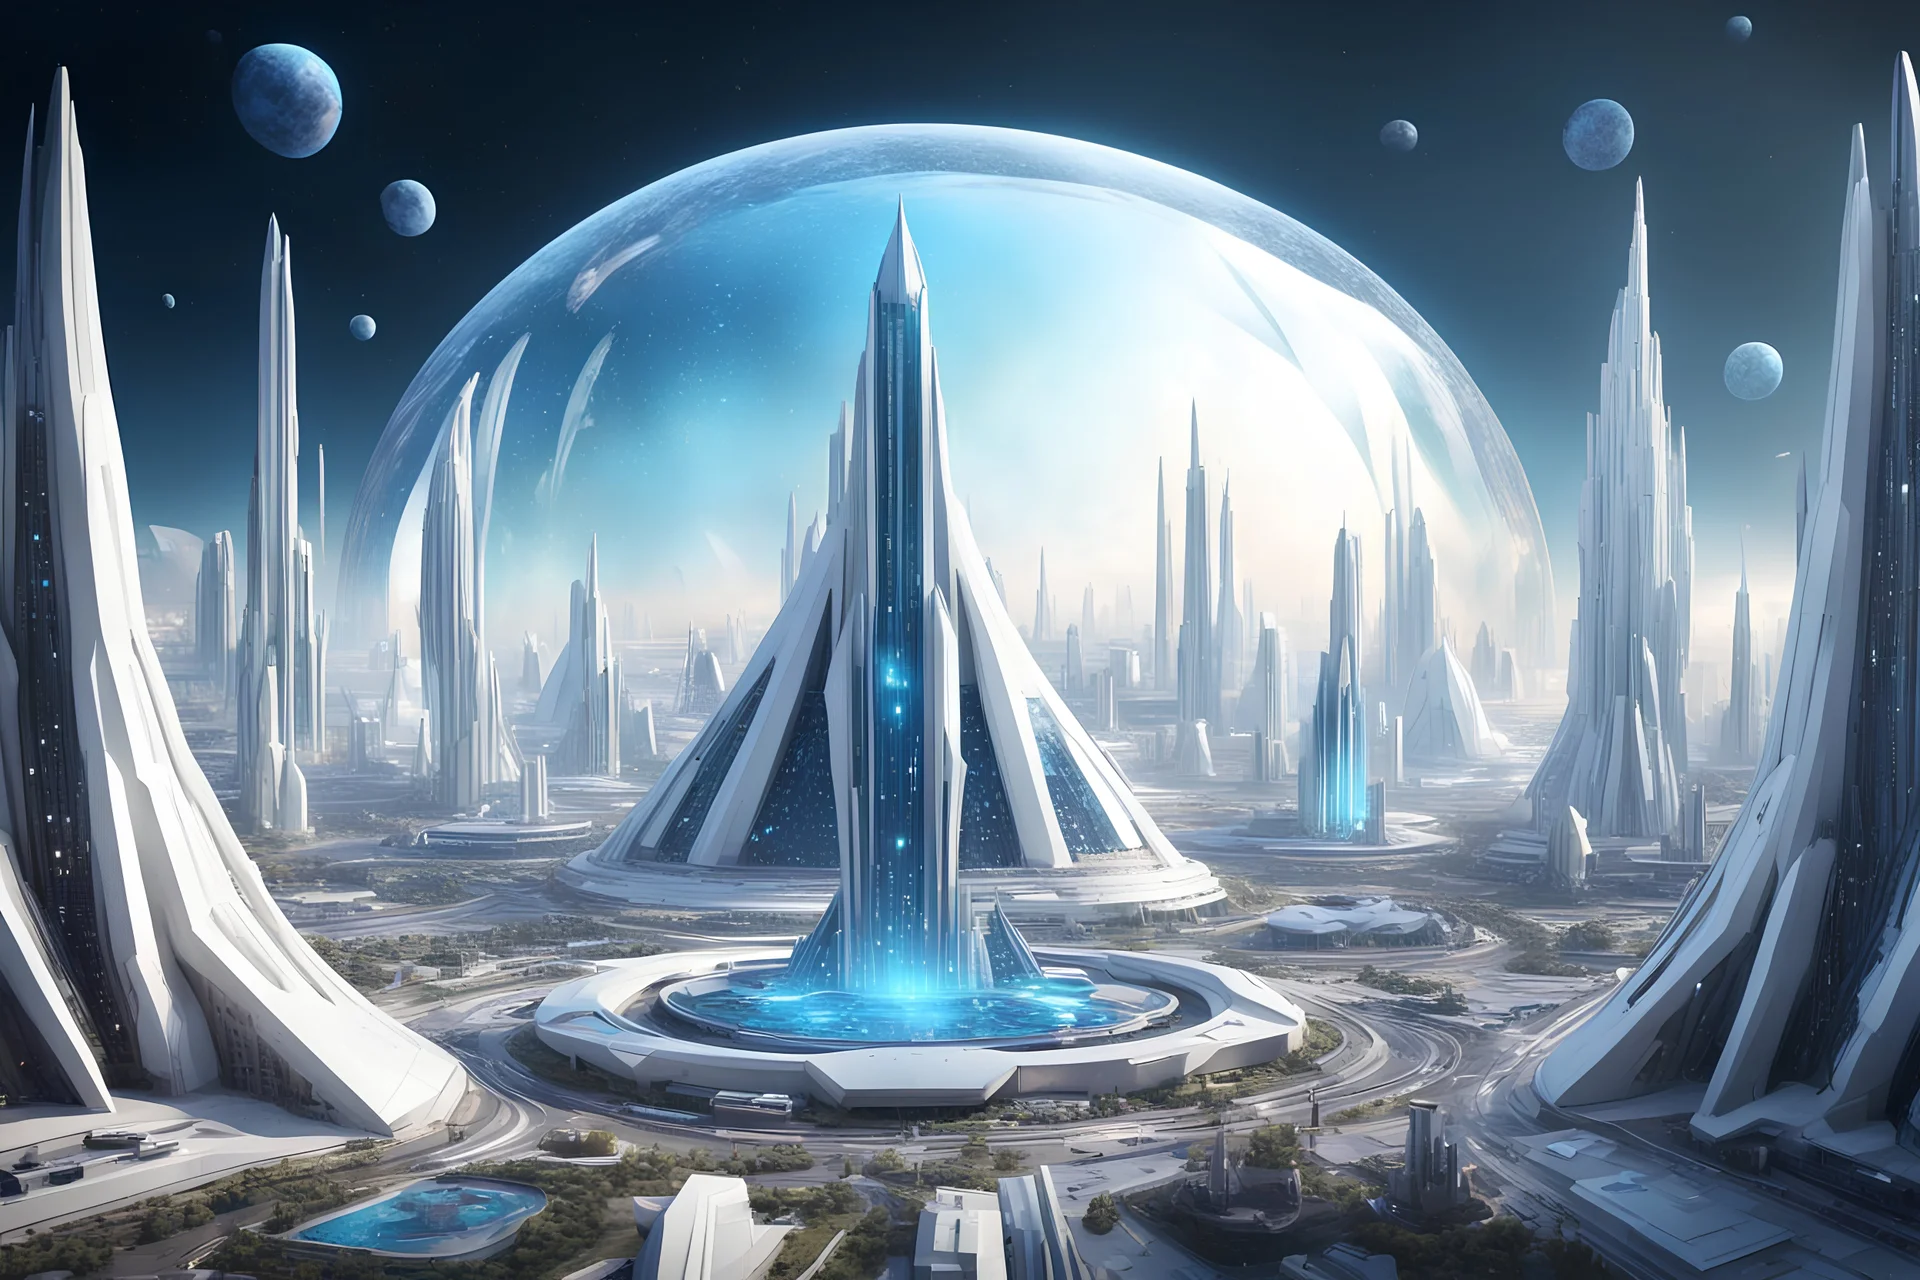 ville extraterrestre white futuriste, great and blue facette cristal dome, vaisseaux spatiaux, 4k, hyperréaliste, cosmic srars sky